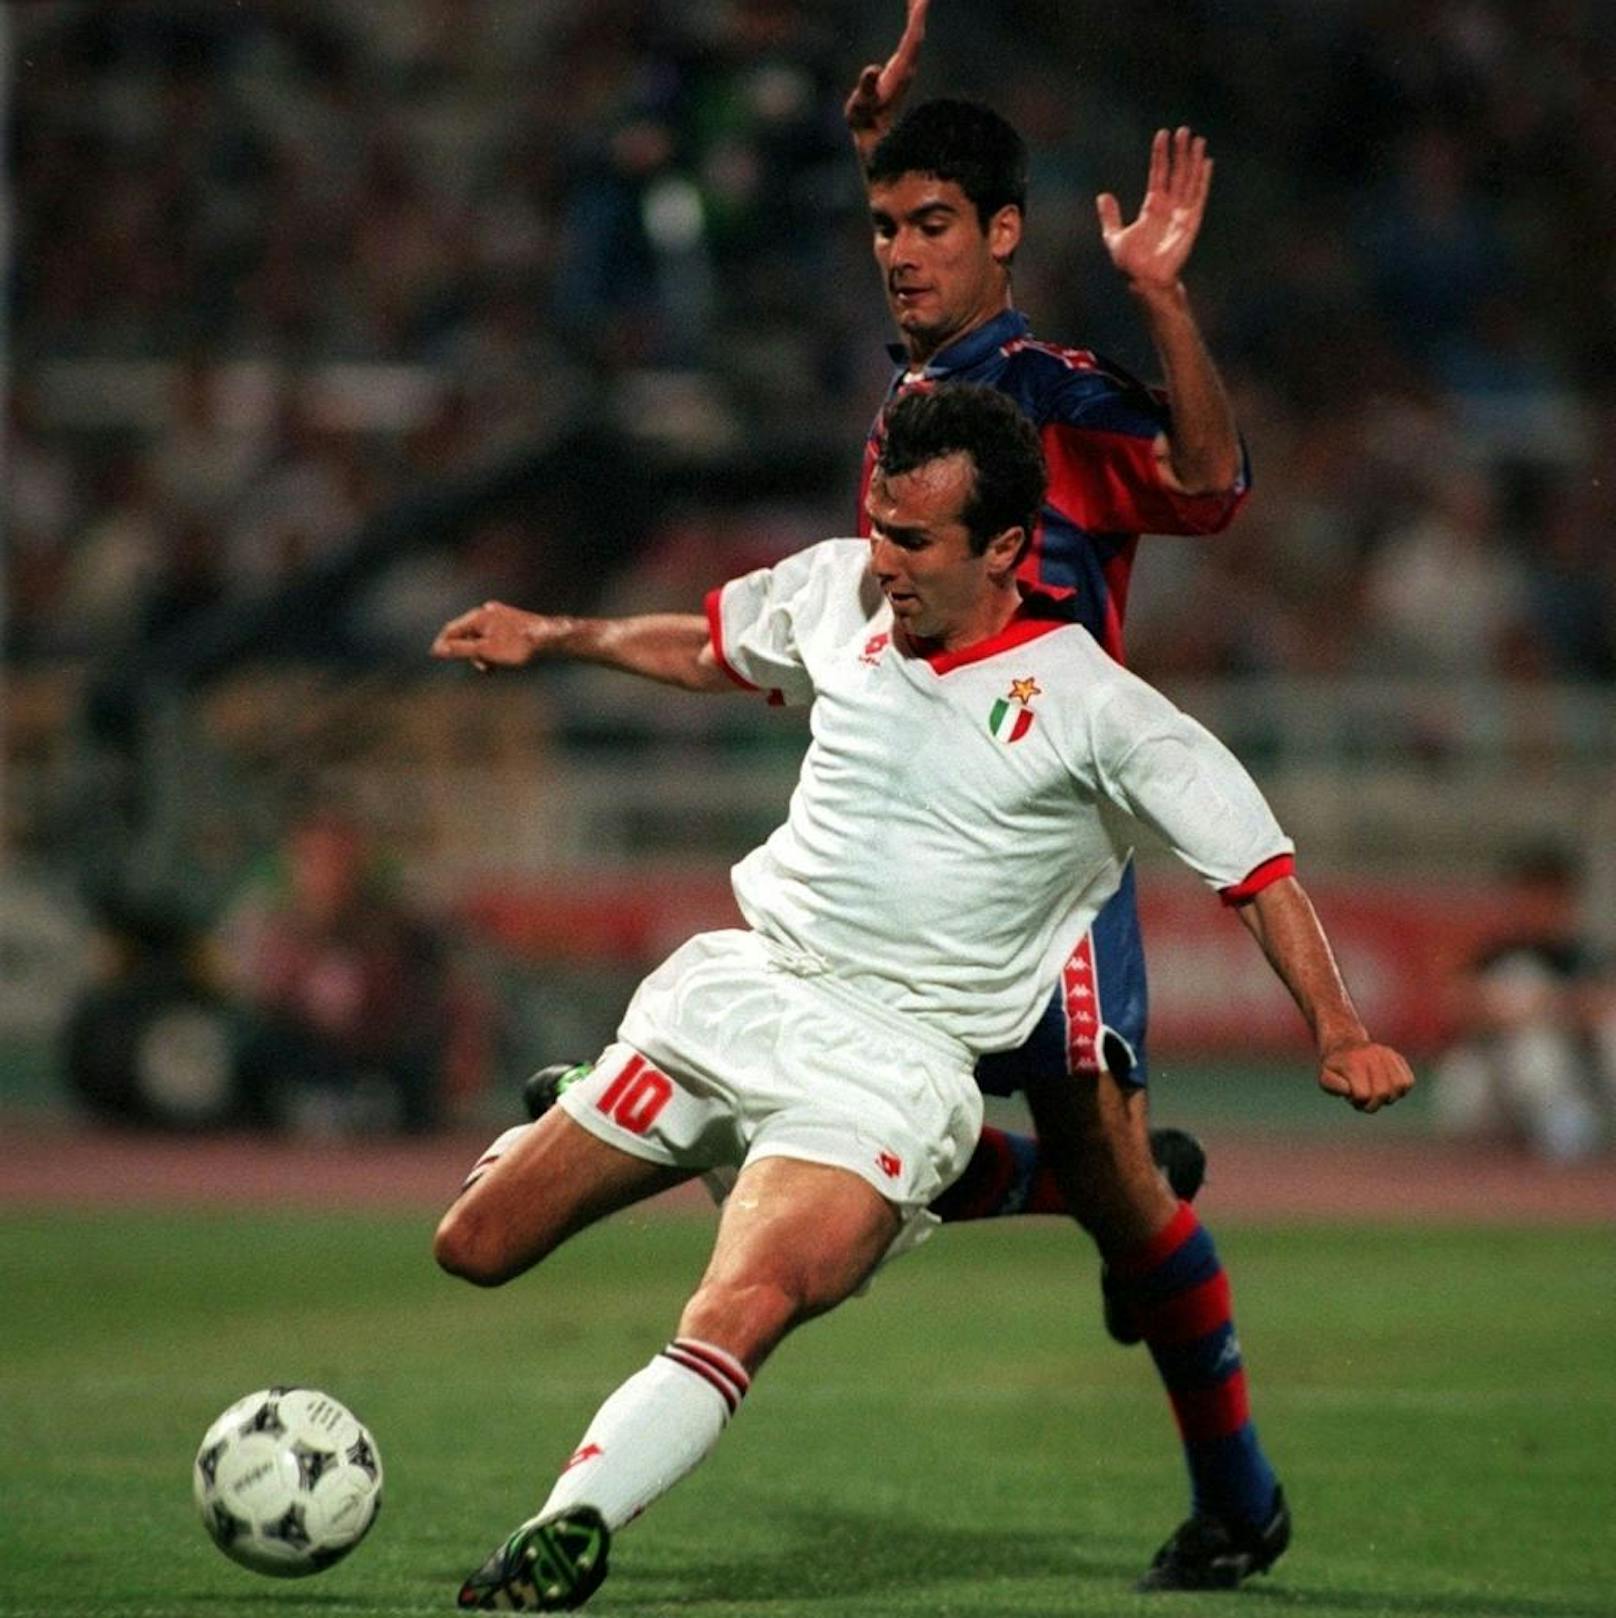 1994 schlug der AC Milan (im Bild Savicevic gegen Guardiola) zu. Die Italiener fertigten Barcelona in Athen vor 70.000 Fans mit 4:0 ab.